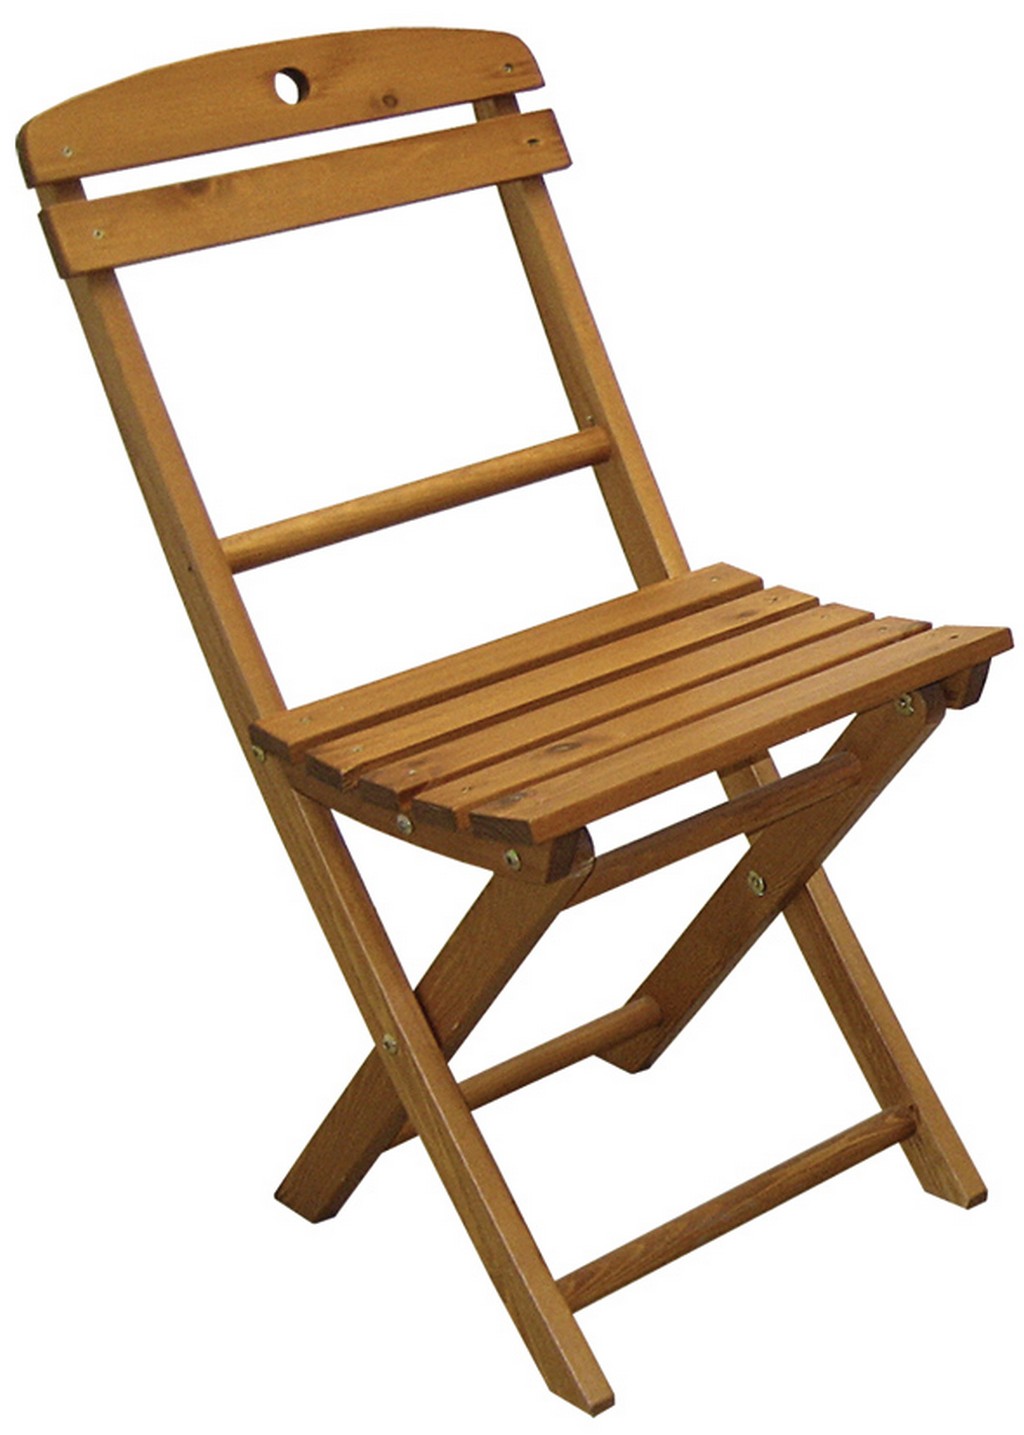 Недорогие складные стулья. Стул «КОВЧЕГЪ» складной деревянный. Складной стул хофф. Складной стул fd8300250. Стул деревянный складной валберис.